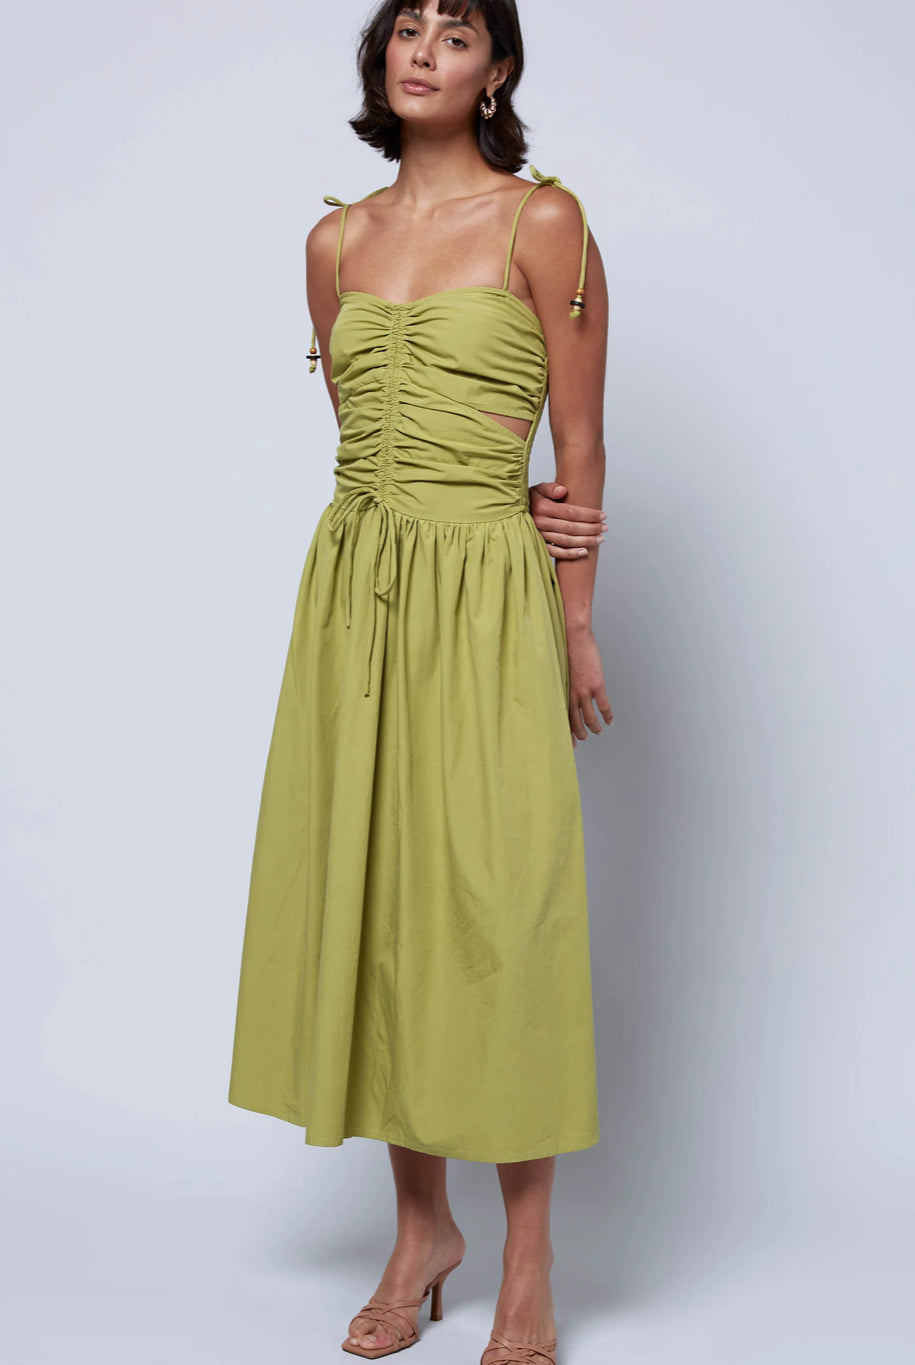 
  
  Green Drawstring Detail Dress
  
